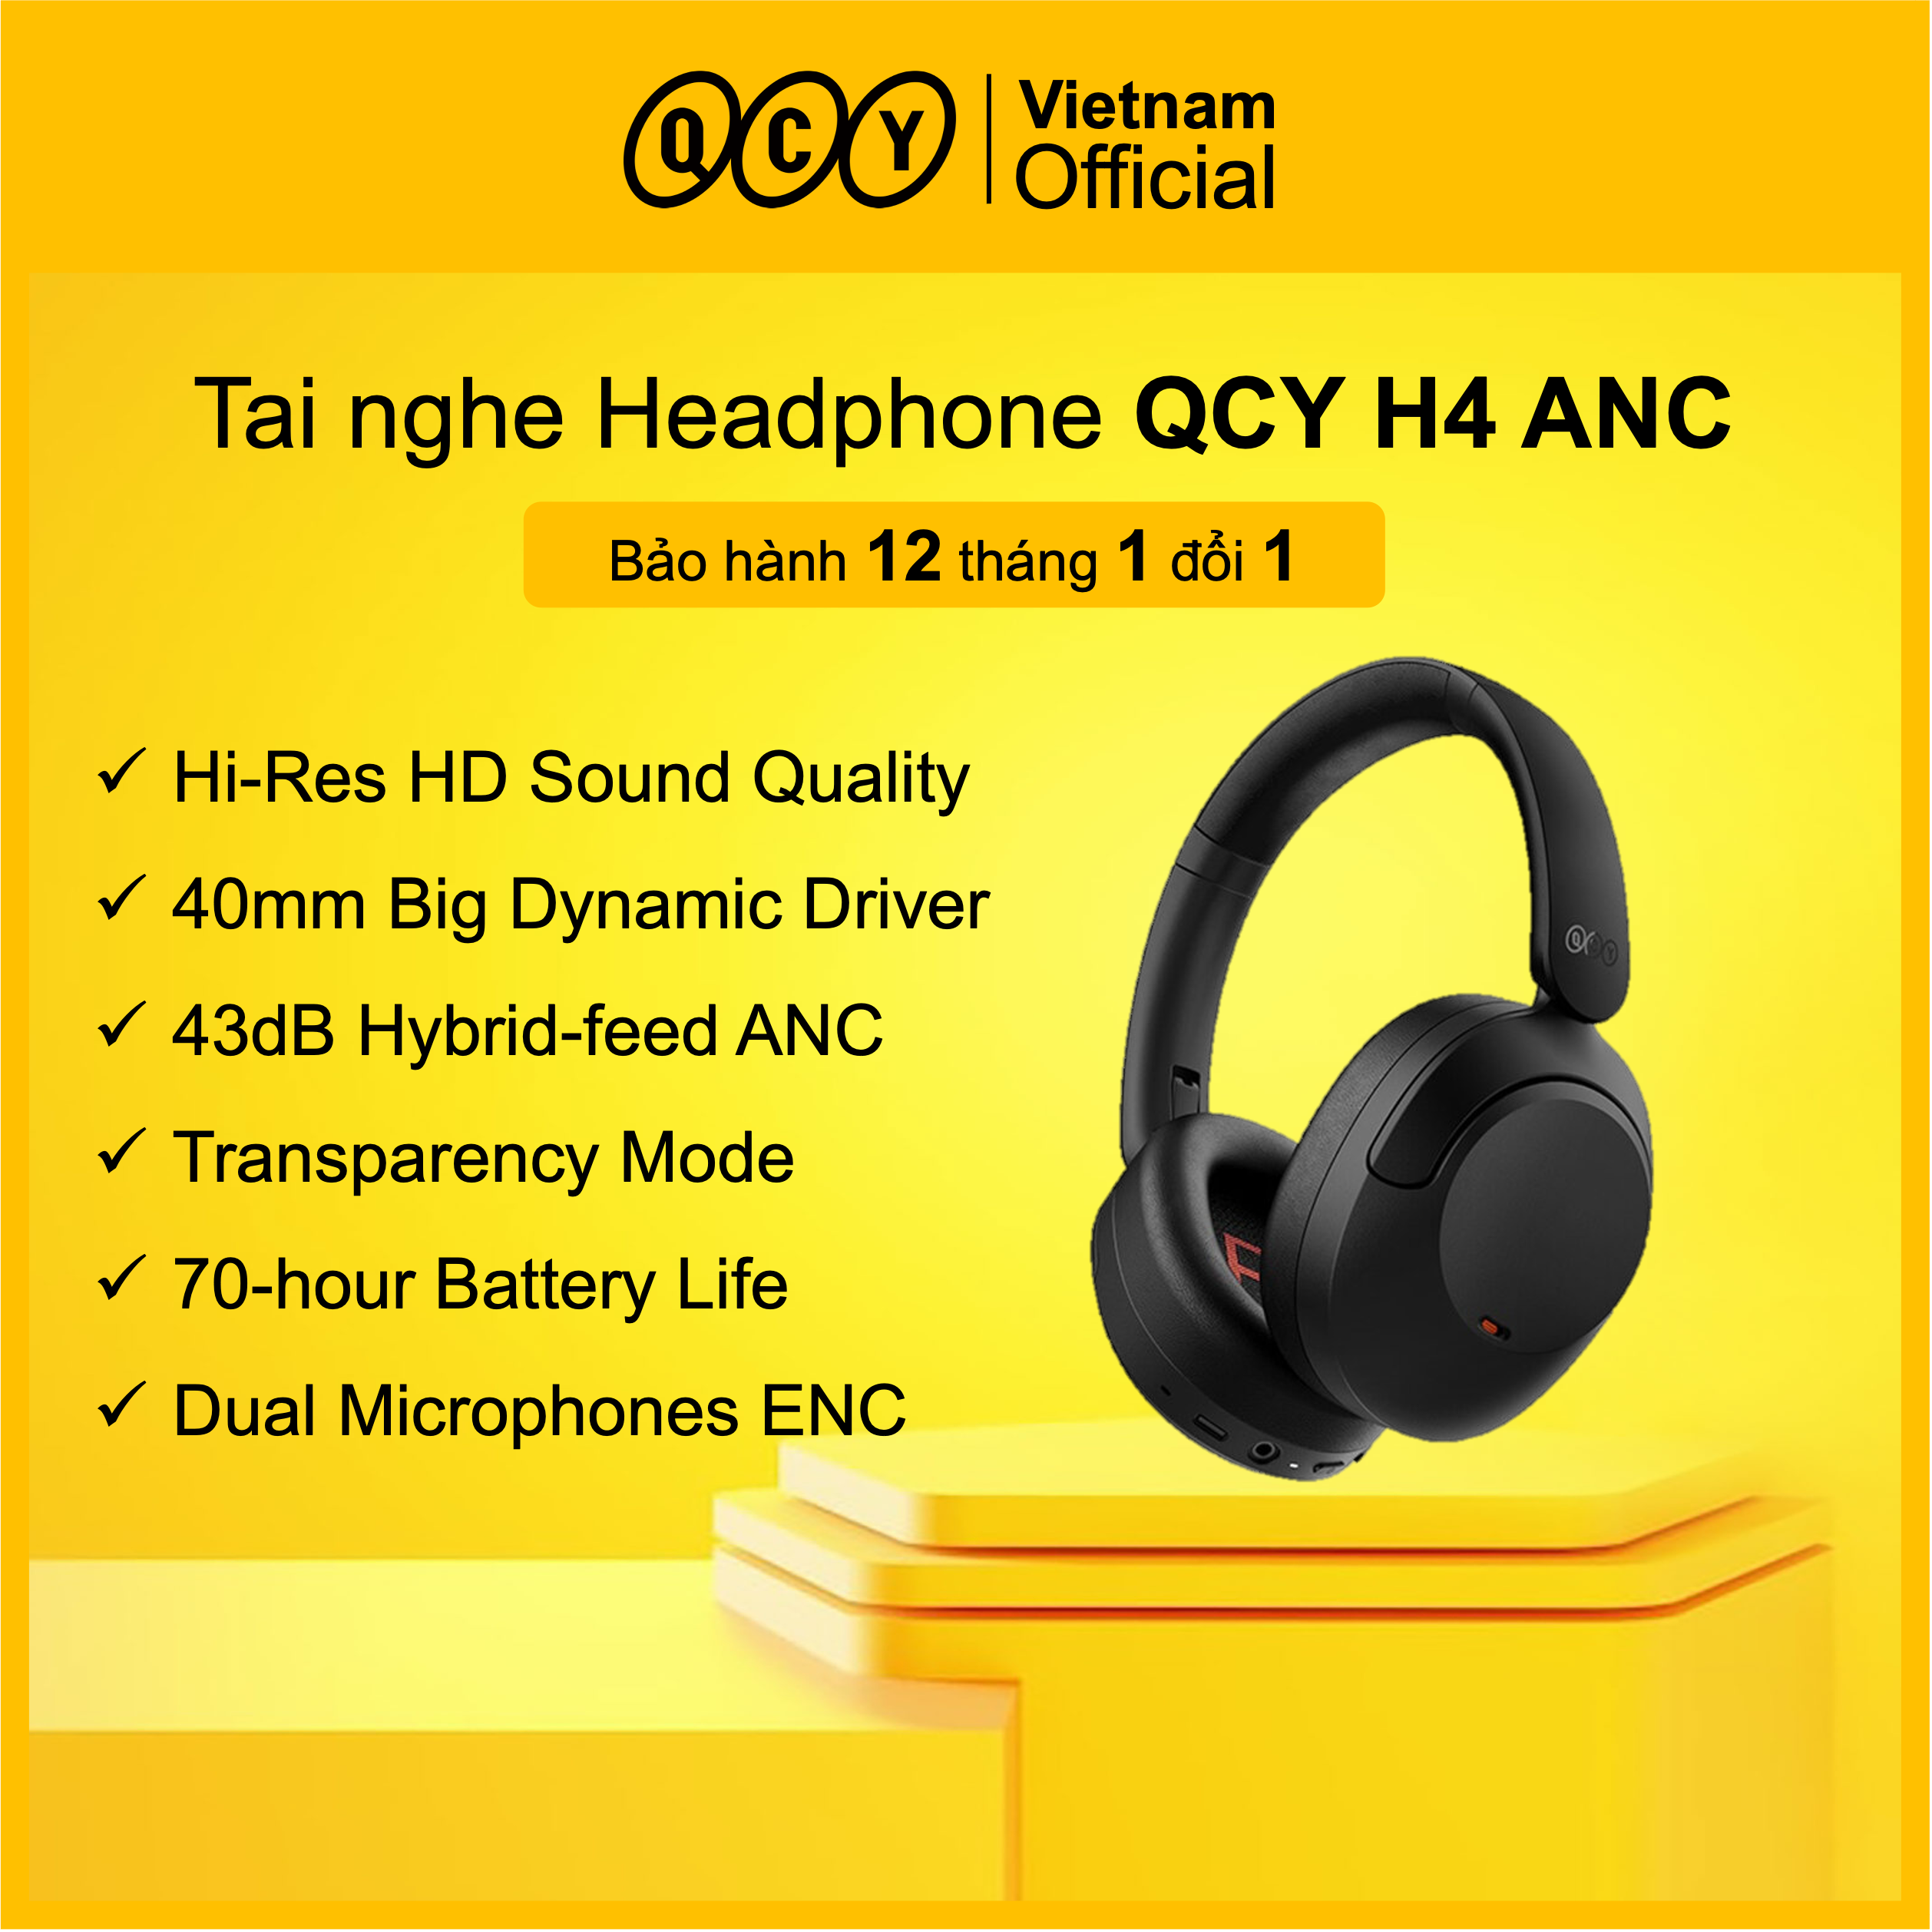 Tai nghe Headphone QCY H4 ANC - Bảo hành Chính hãng 1 đổi 1 12 tháng